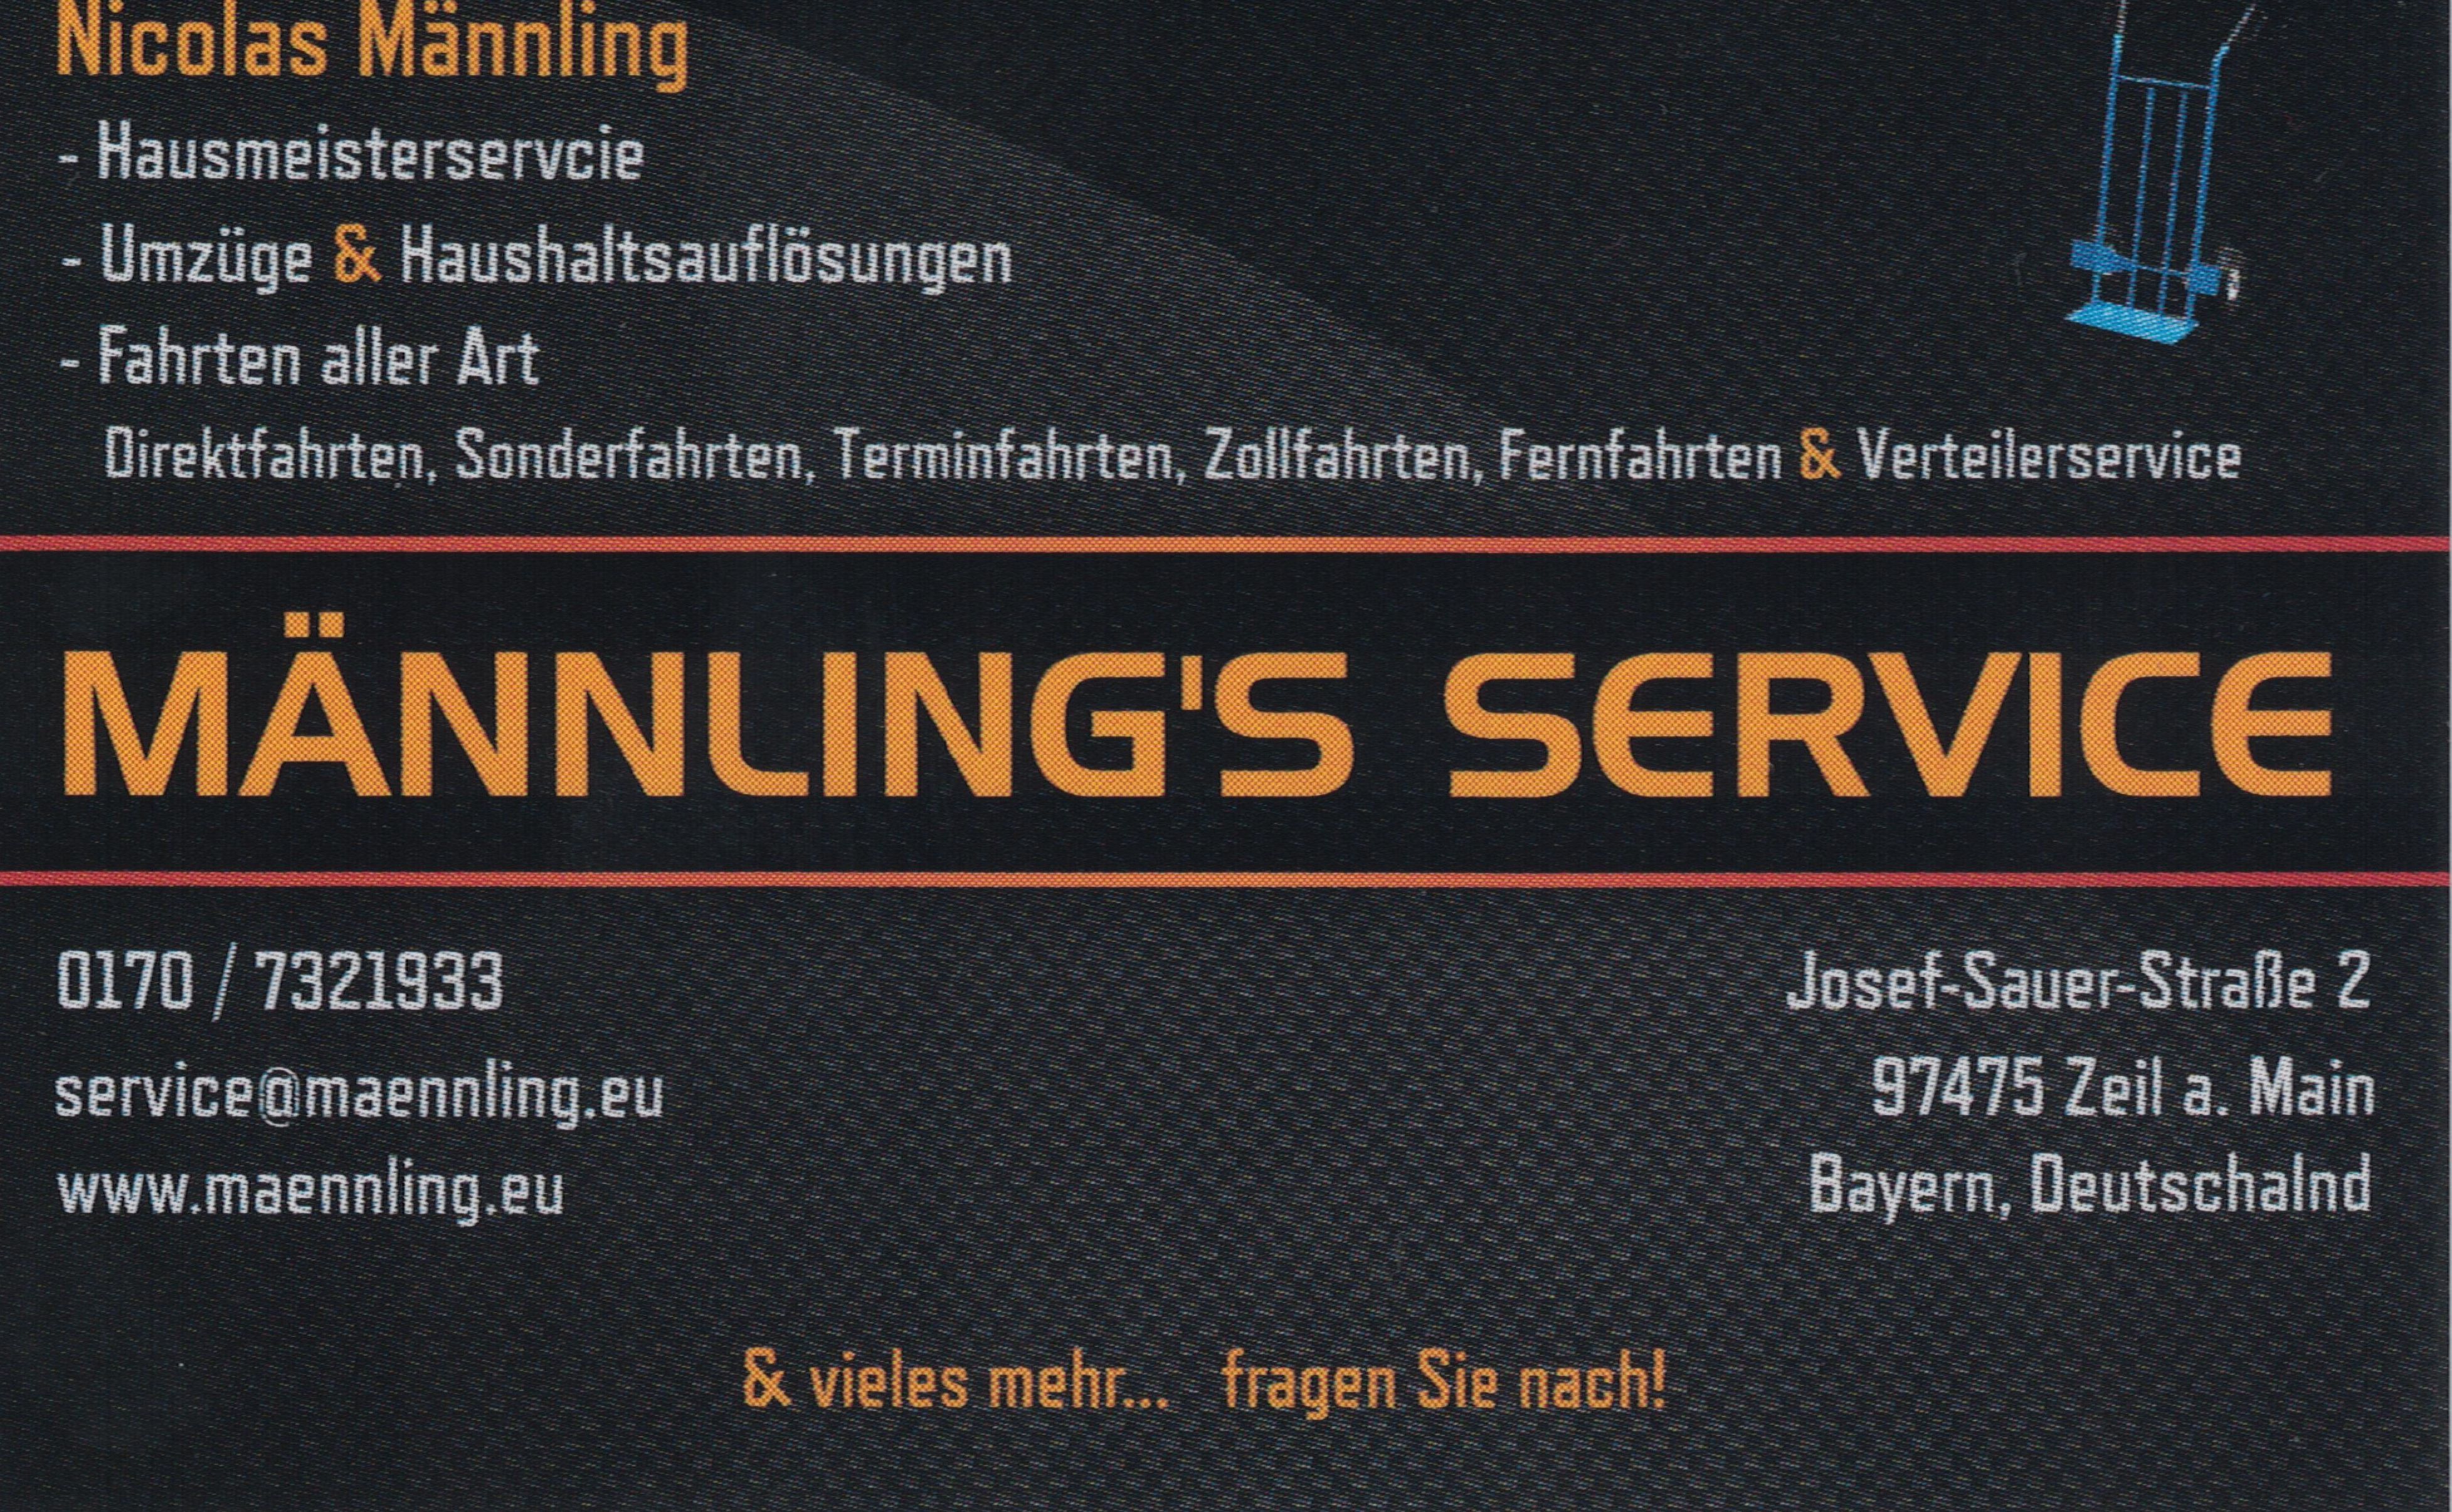 MÄNNLING’S SERVICE